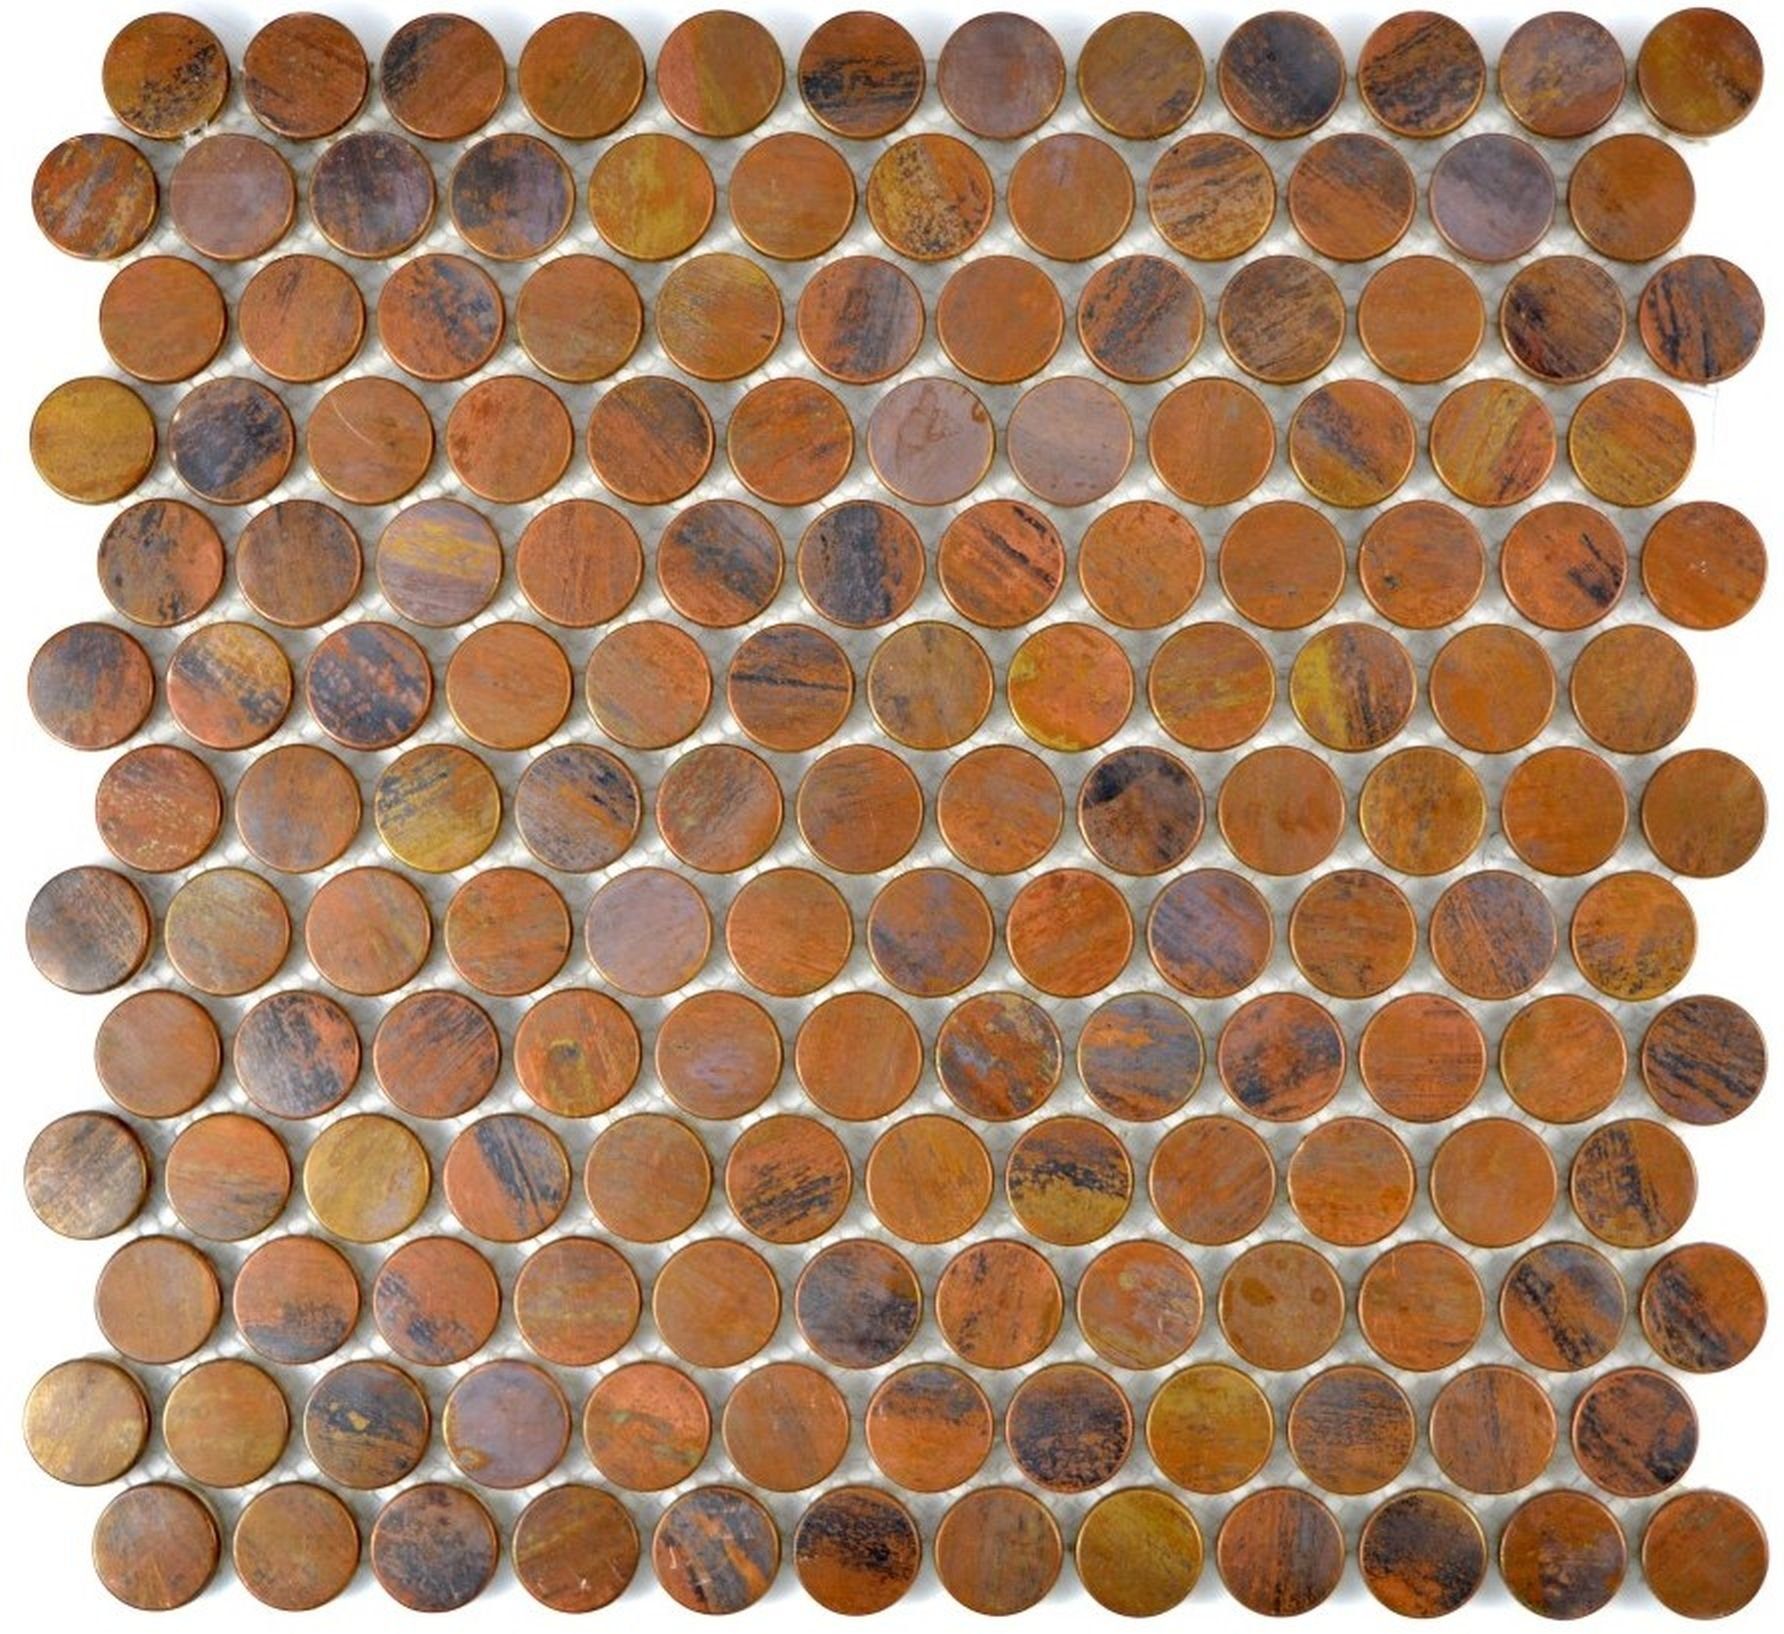 Mosani Mosaikfliesen Kupfermosaik Fliese Knopfmosaik braun Küchenrückwand Fliesenspiegel